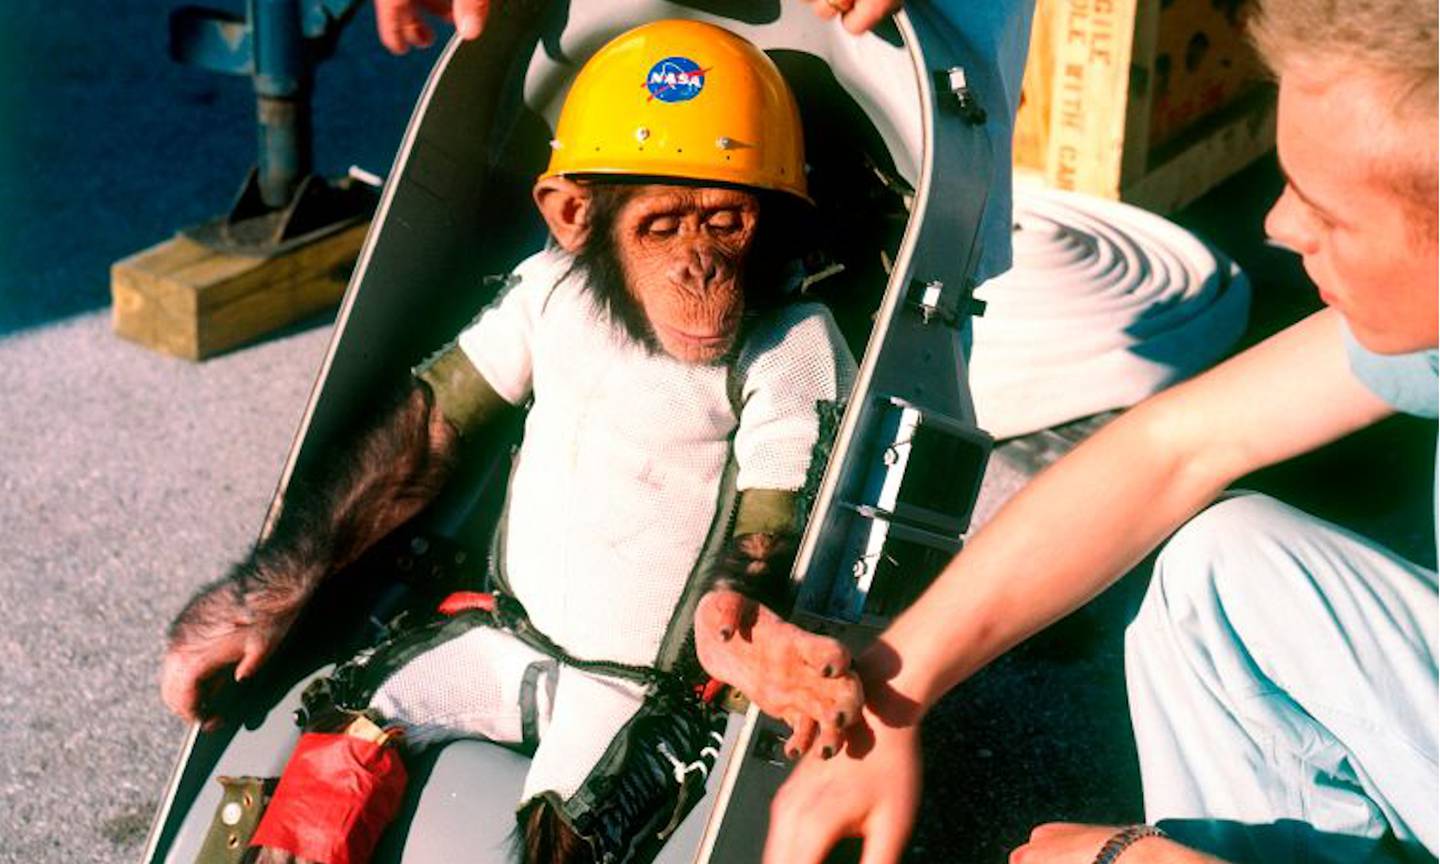 Se cumplen 40 años de la muerte de Ham, el primer chimpancé astronauta de la NASA y el primer homínido que viajó al espacio. Esta es su historia.